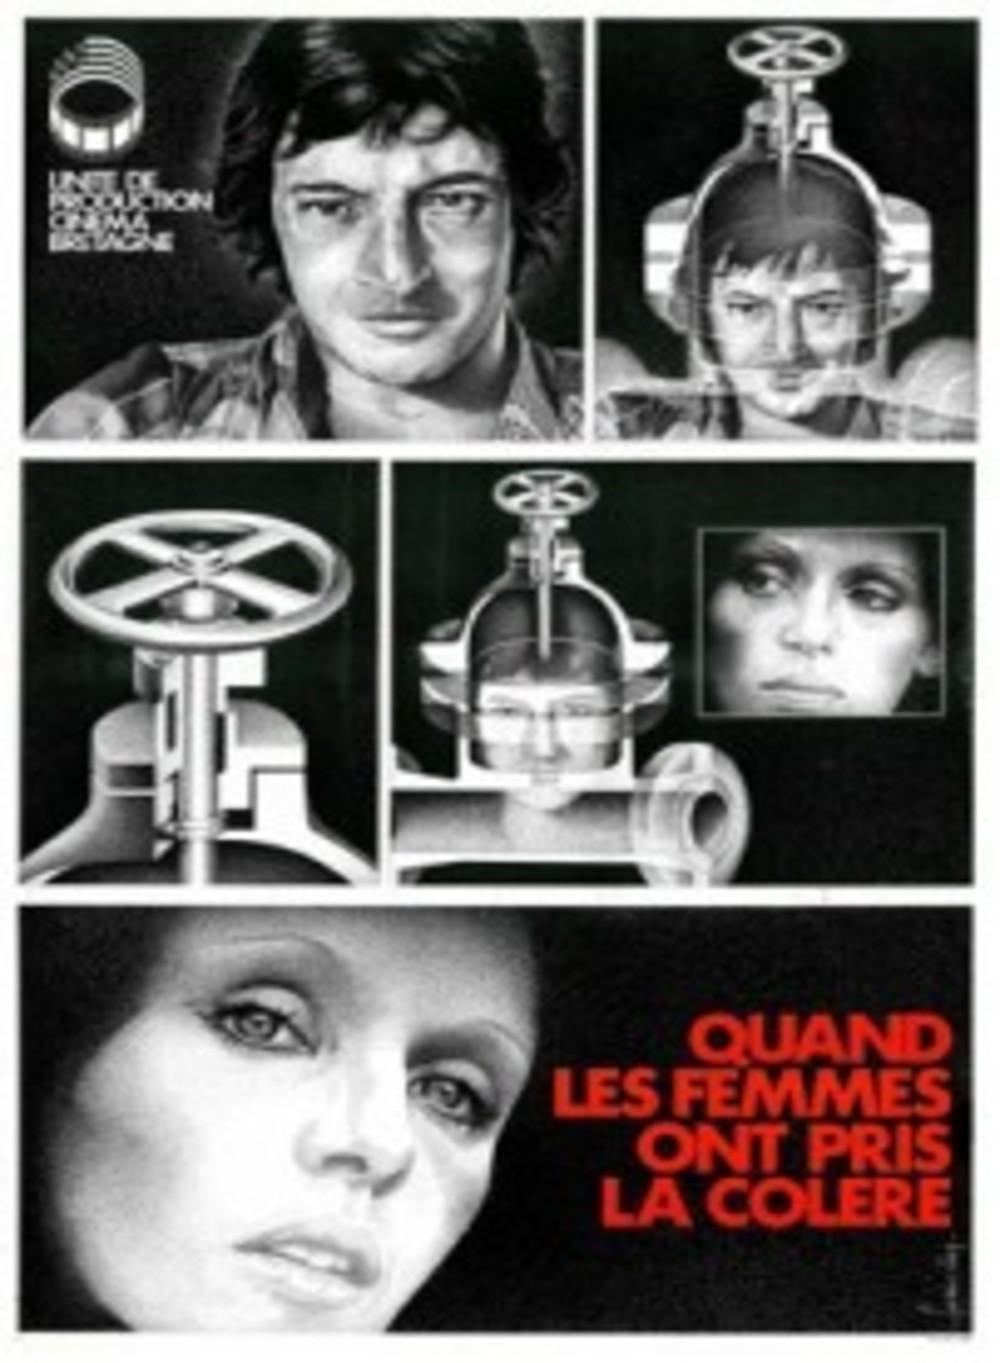 Affiche du film <i>Quand les femmes ont pris la colère</i>. De René Vautier et Soazig Chappedelaine, 1976.